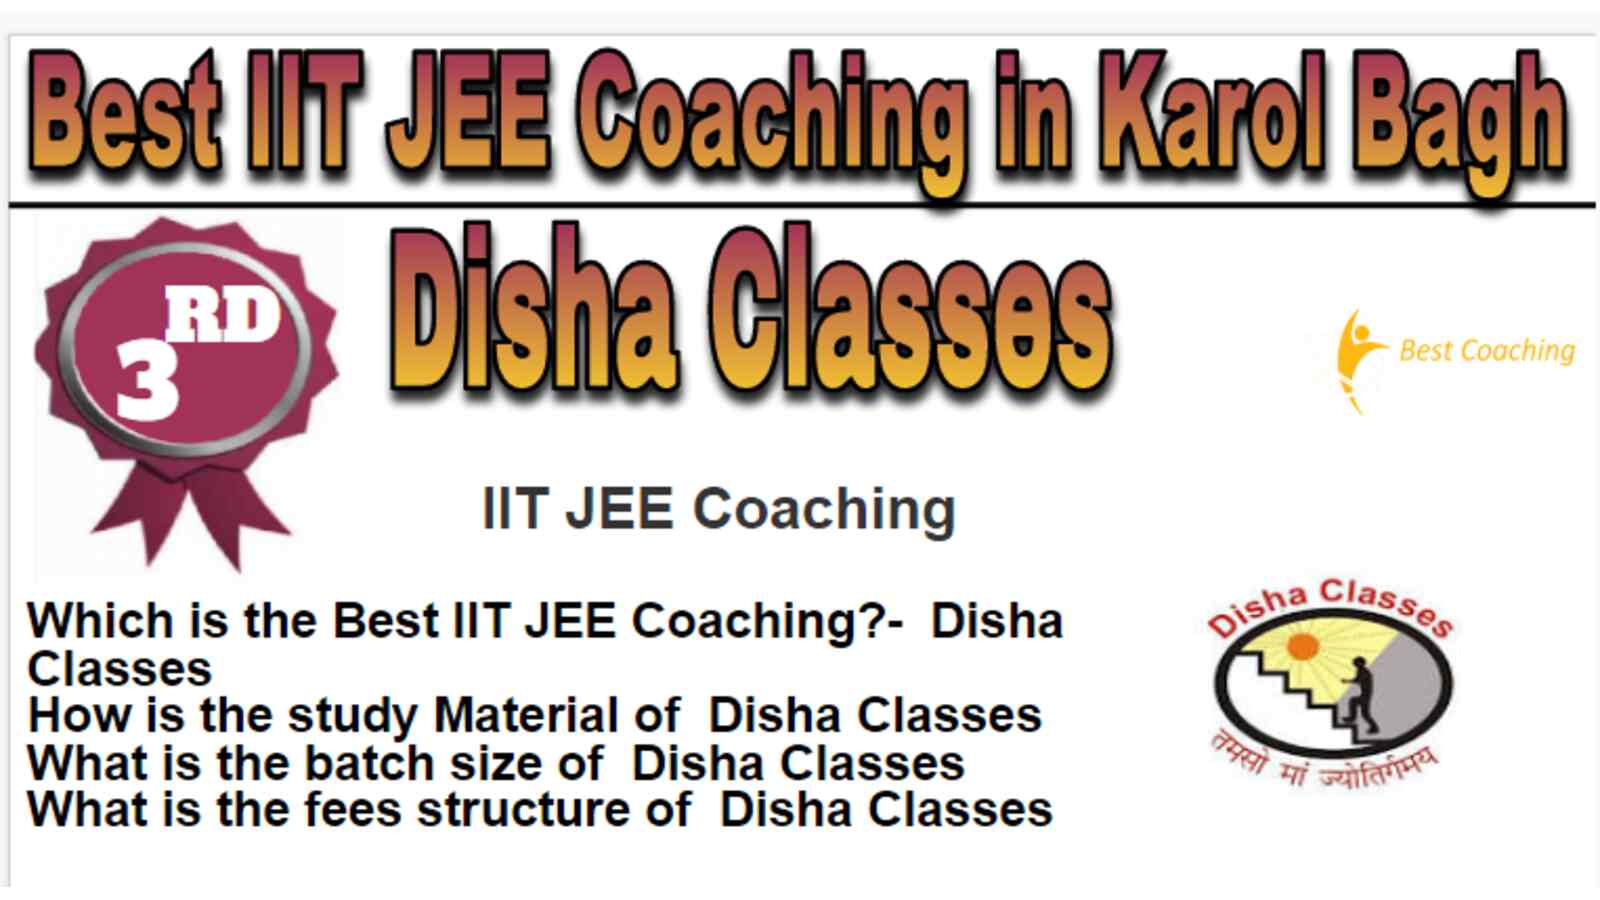 Rank 3 Best IIT JEE Coaching in Karol Bagh